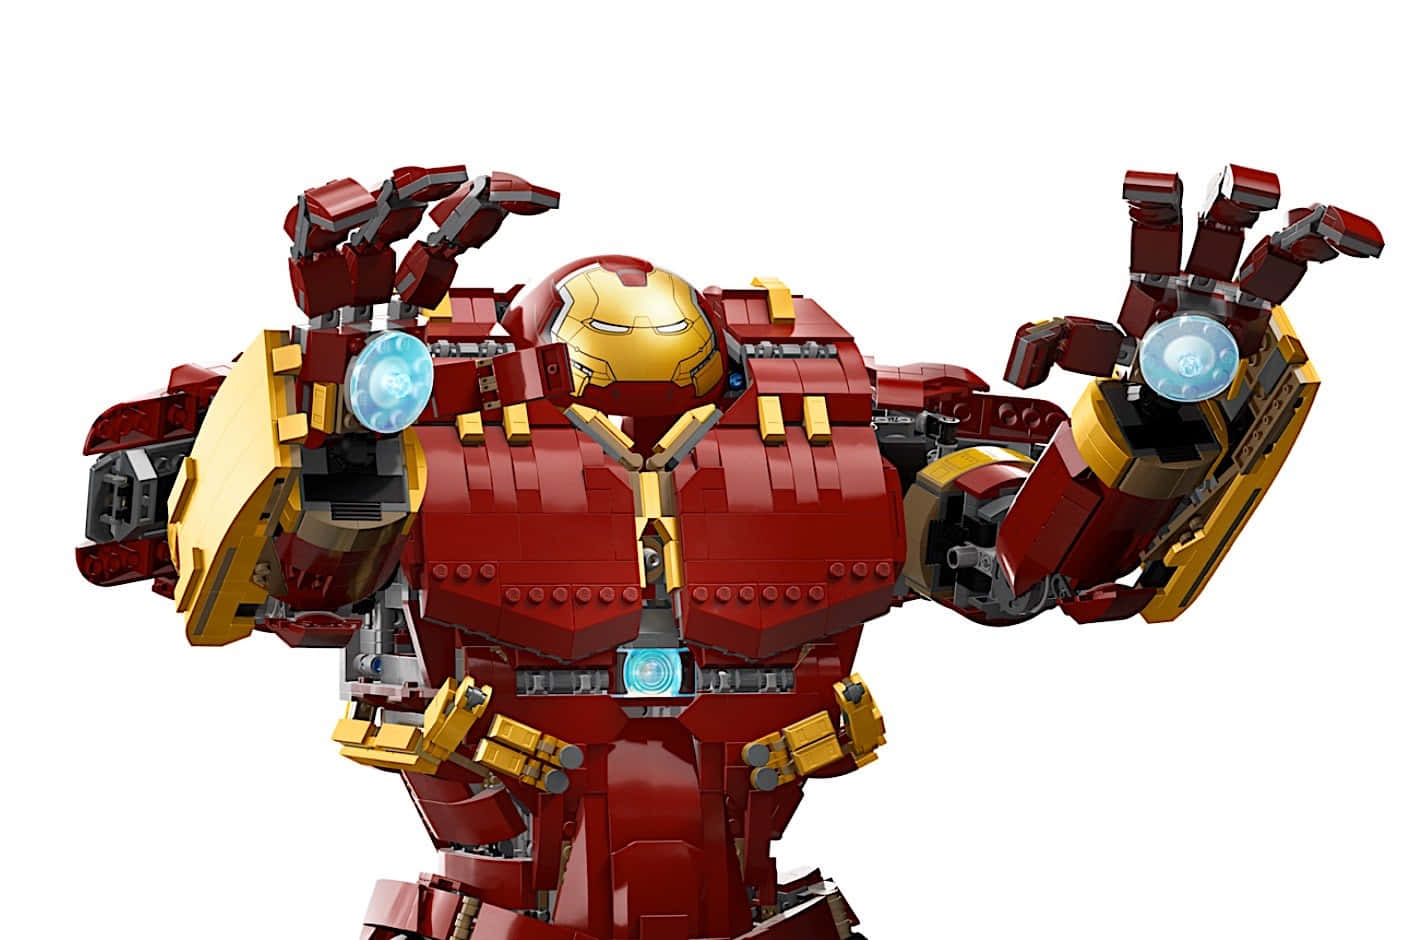 Immaginedel Giocattolo Lego Di Iron Man Hulkbuster